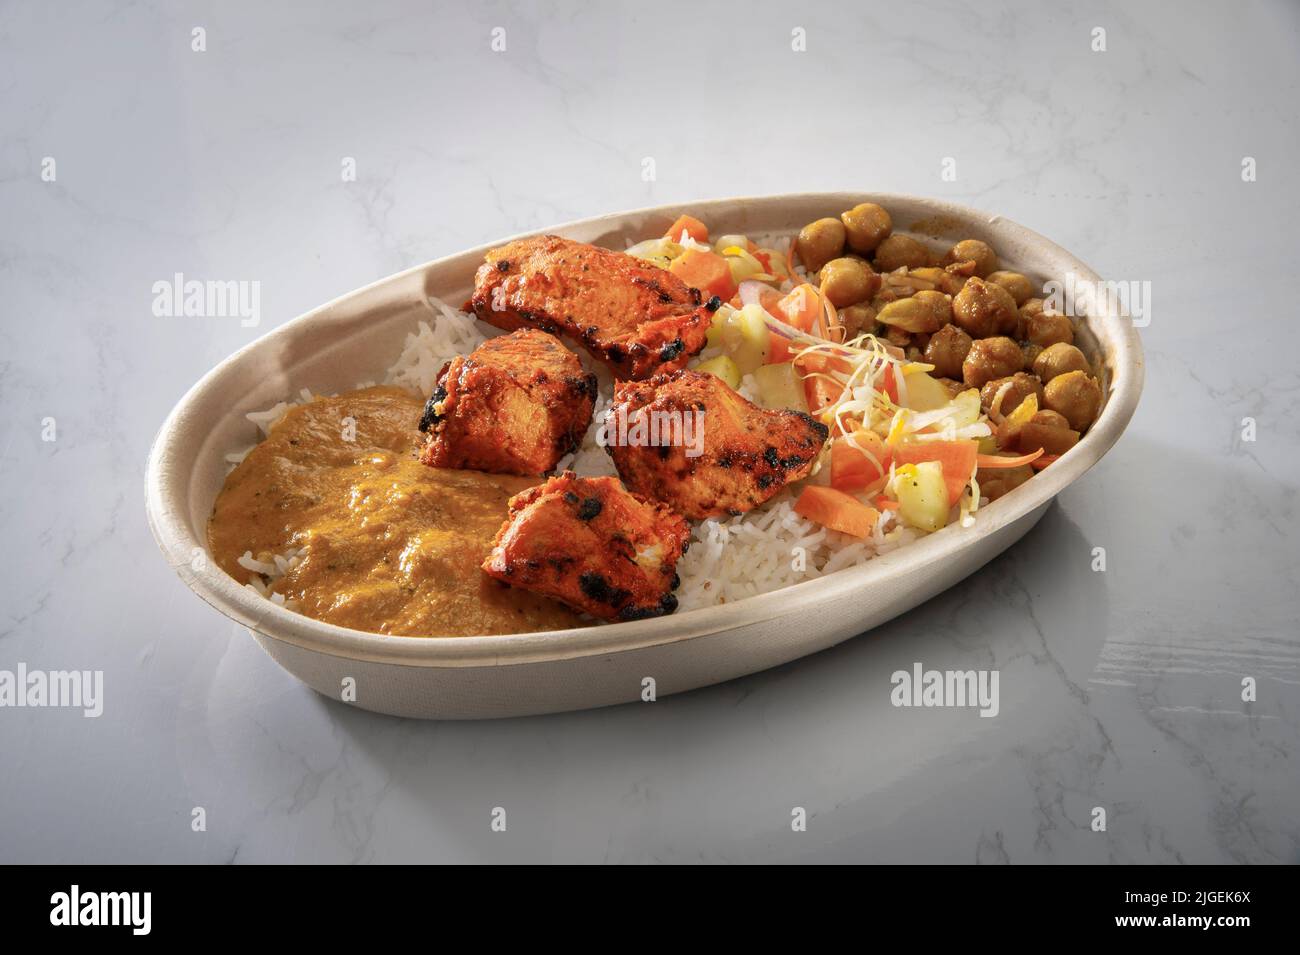 Indisches Essen Stockfoto